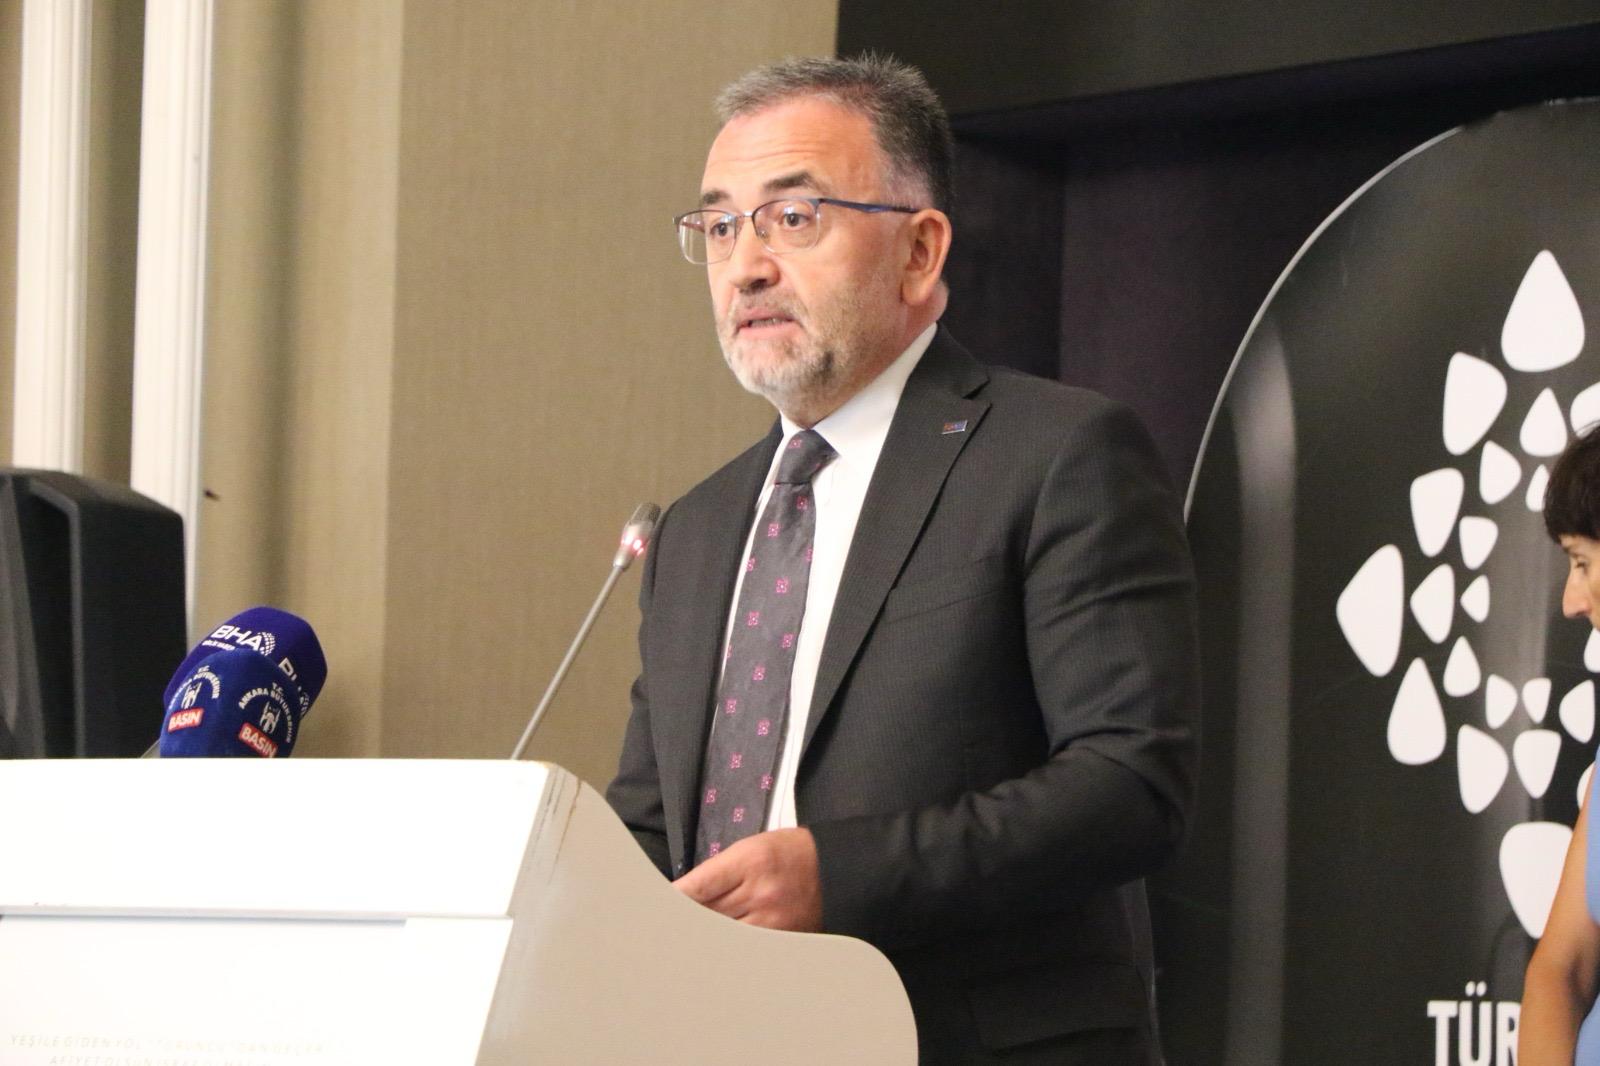 TUROYD Başkanı Çolakoğlu tüm Belediye Başkanlarına “Meclis kadrolarında turizm yöneticilerine yer verin” çağrısında bulundu.